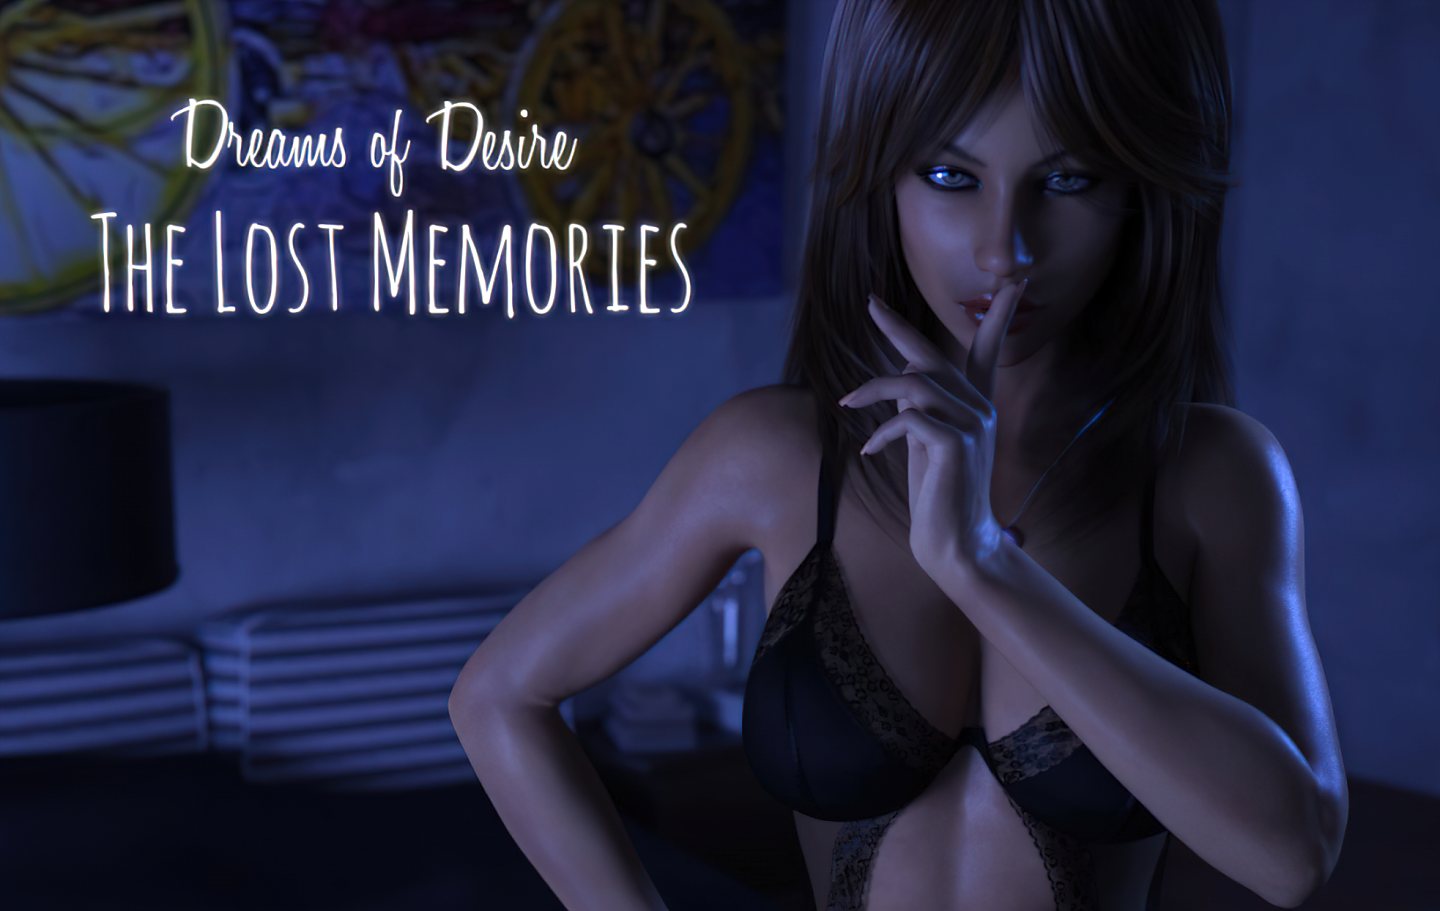 Dreams of Desire: The Lost Memories